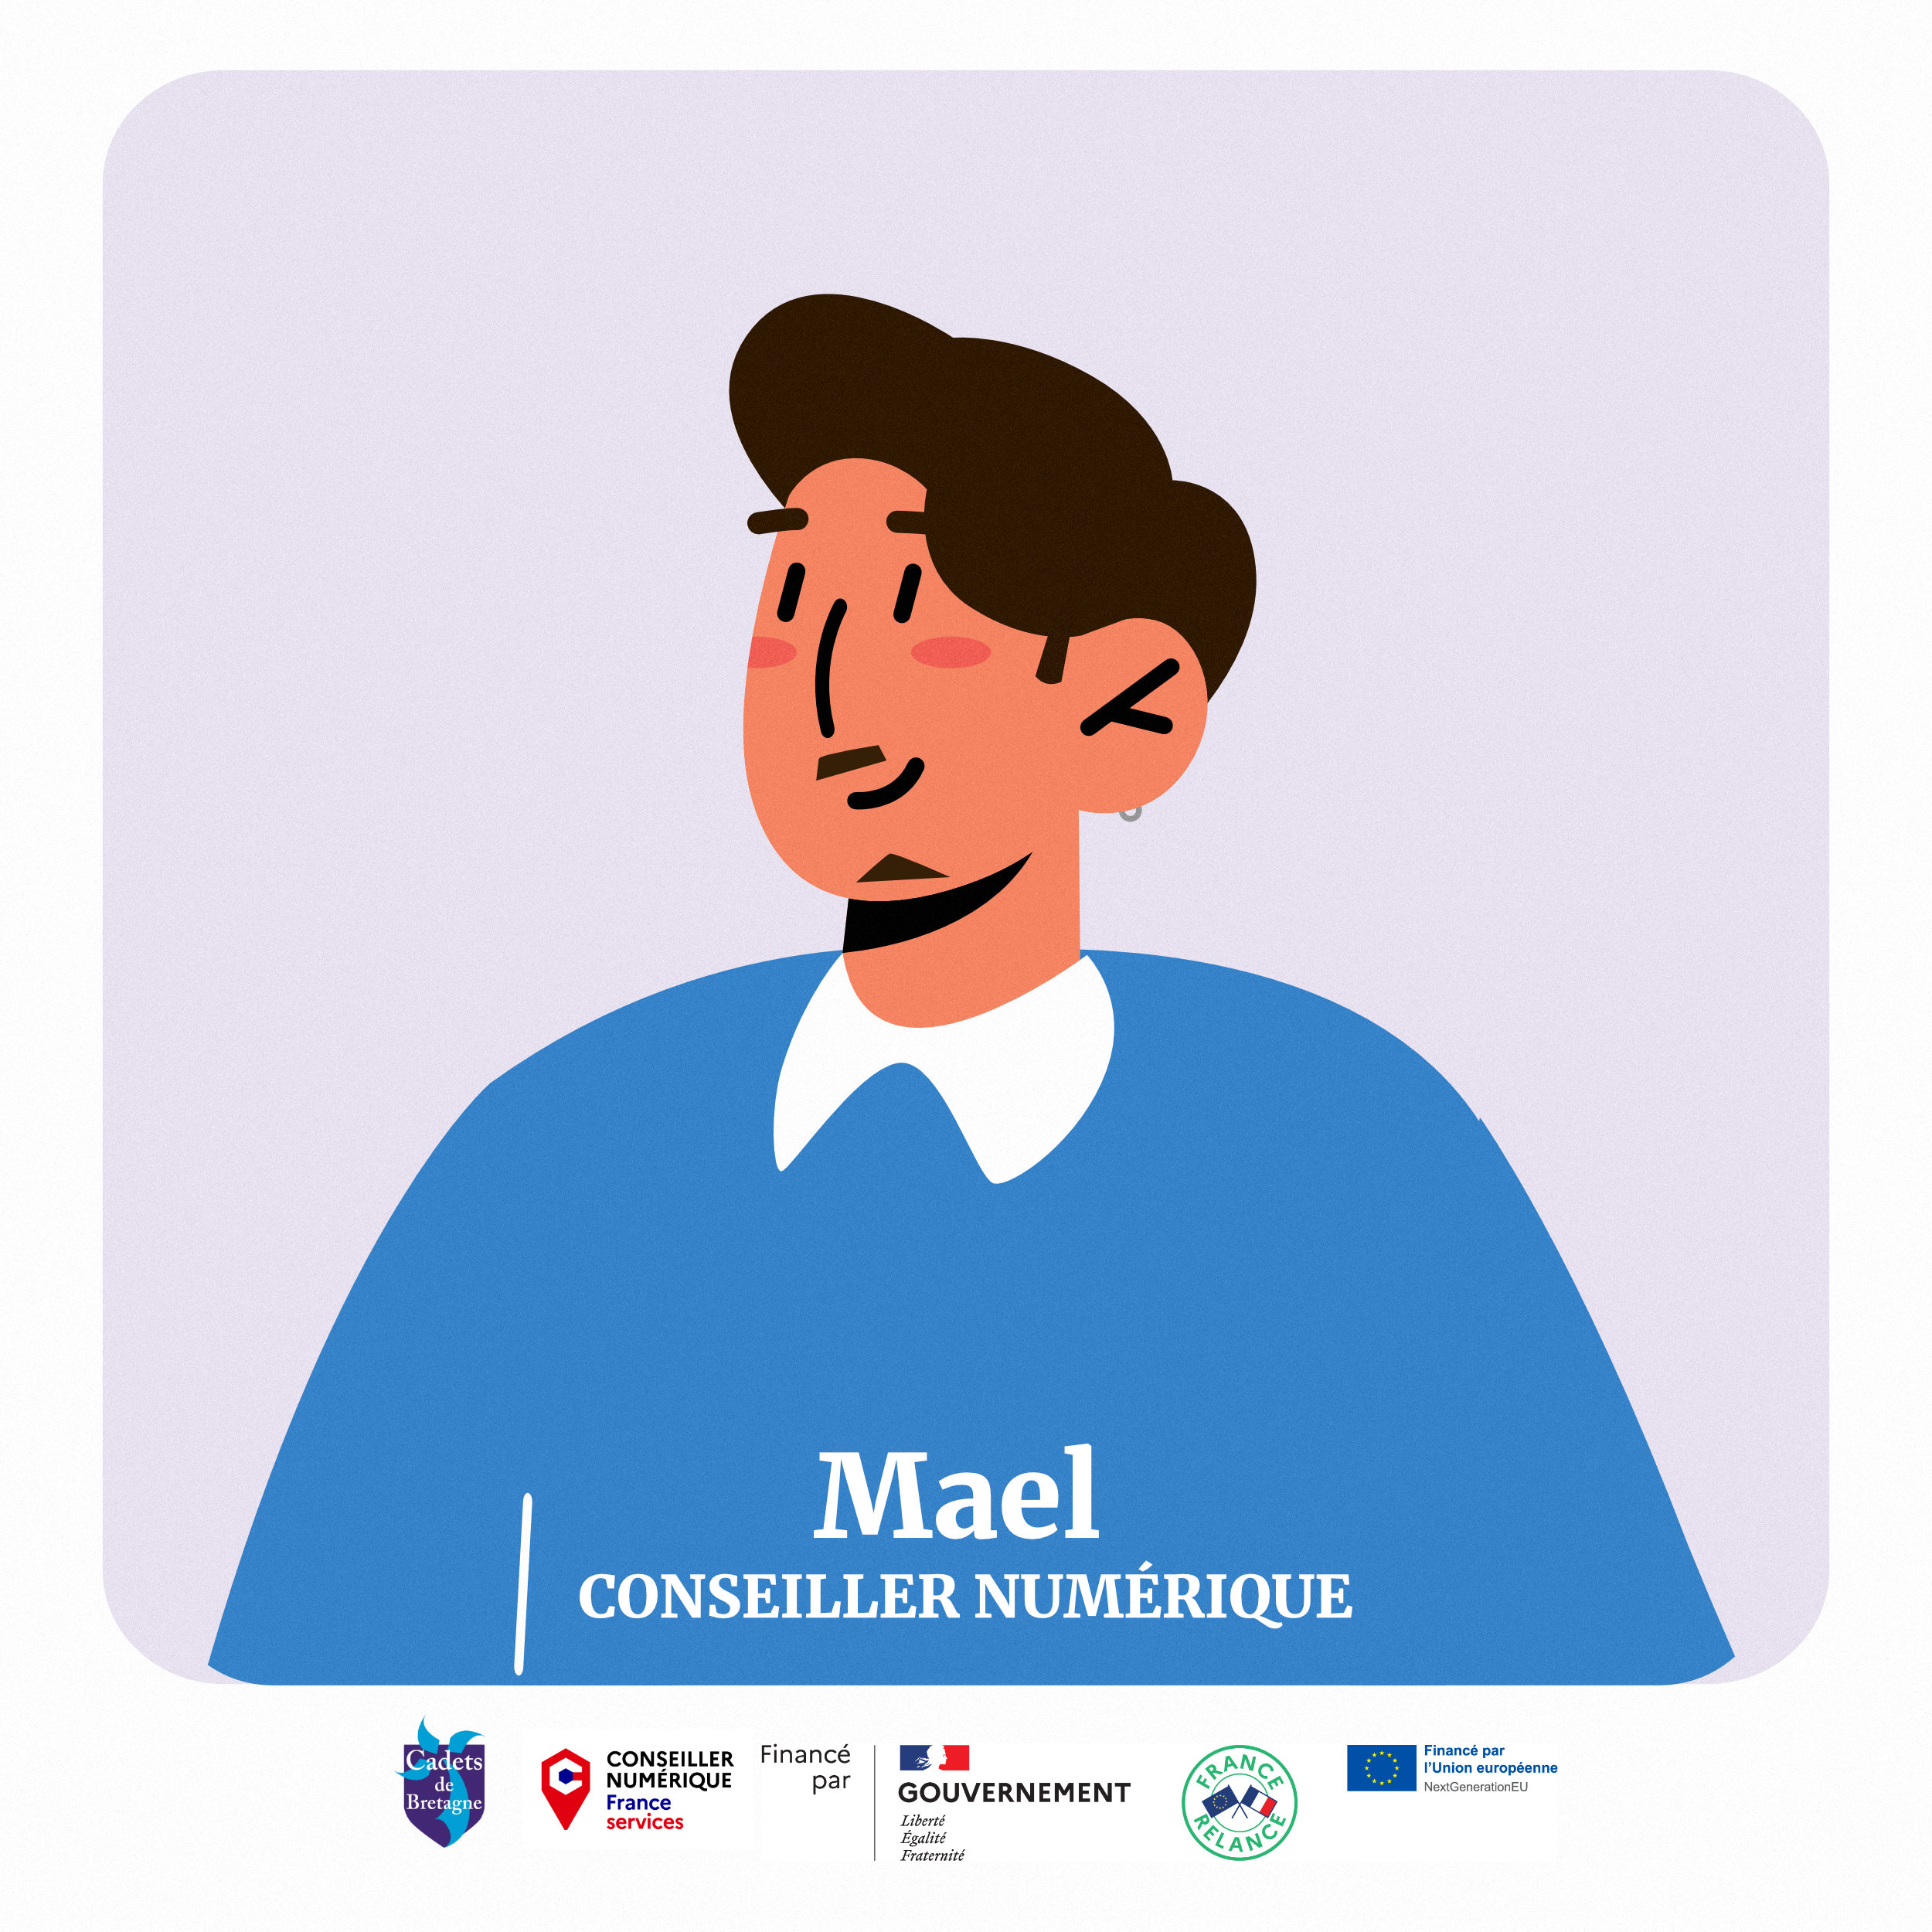 Mael, un conseiller numérique parmi les sportifs